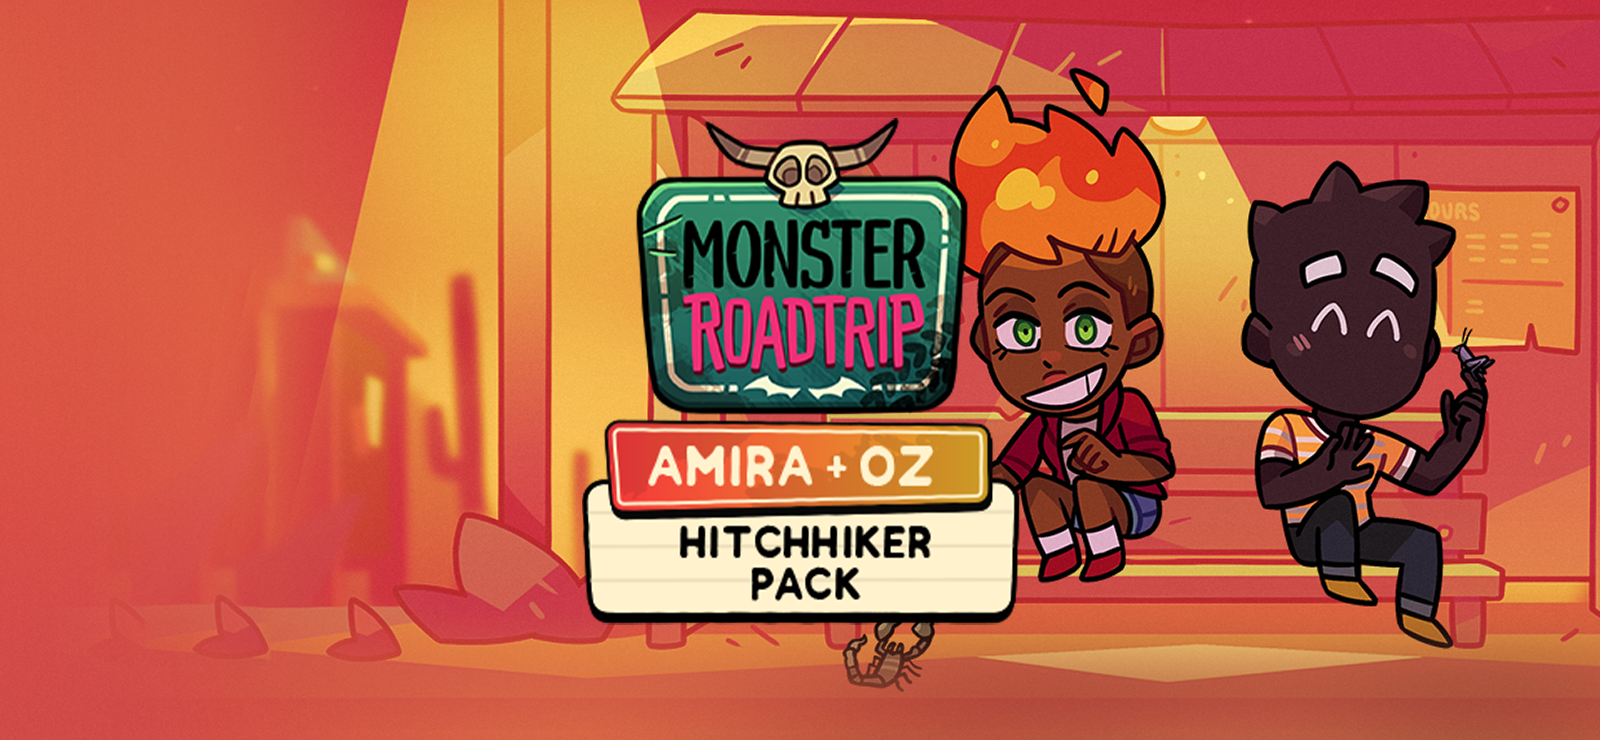 Monster Roadtrip - Hitchhiker Pack - Amira & Oz